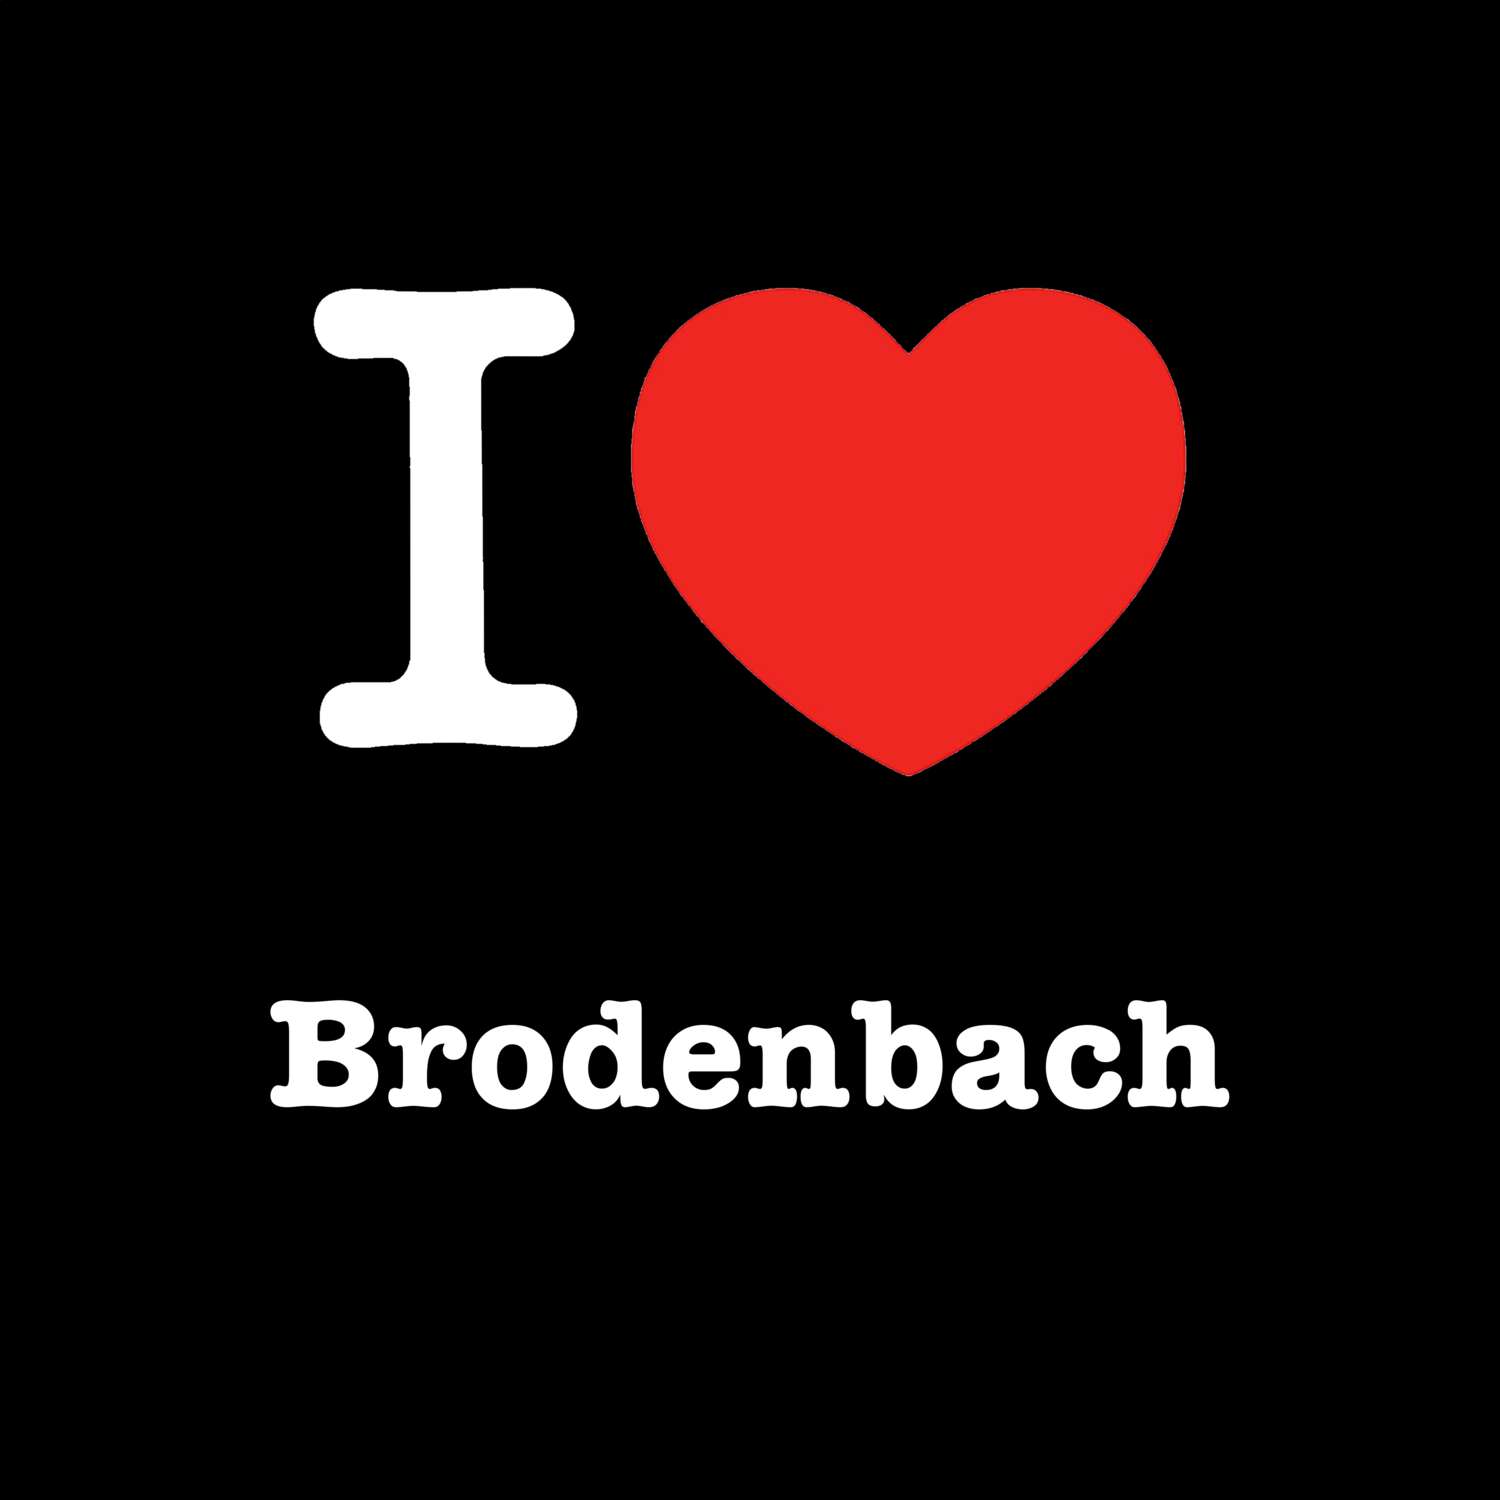 Brodenbach T-Shirt »I love«